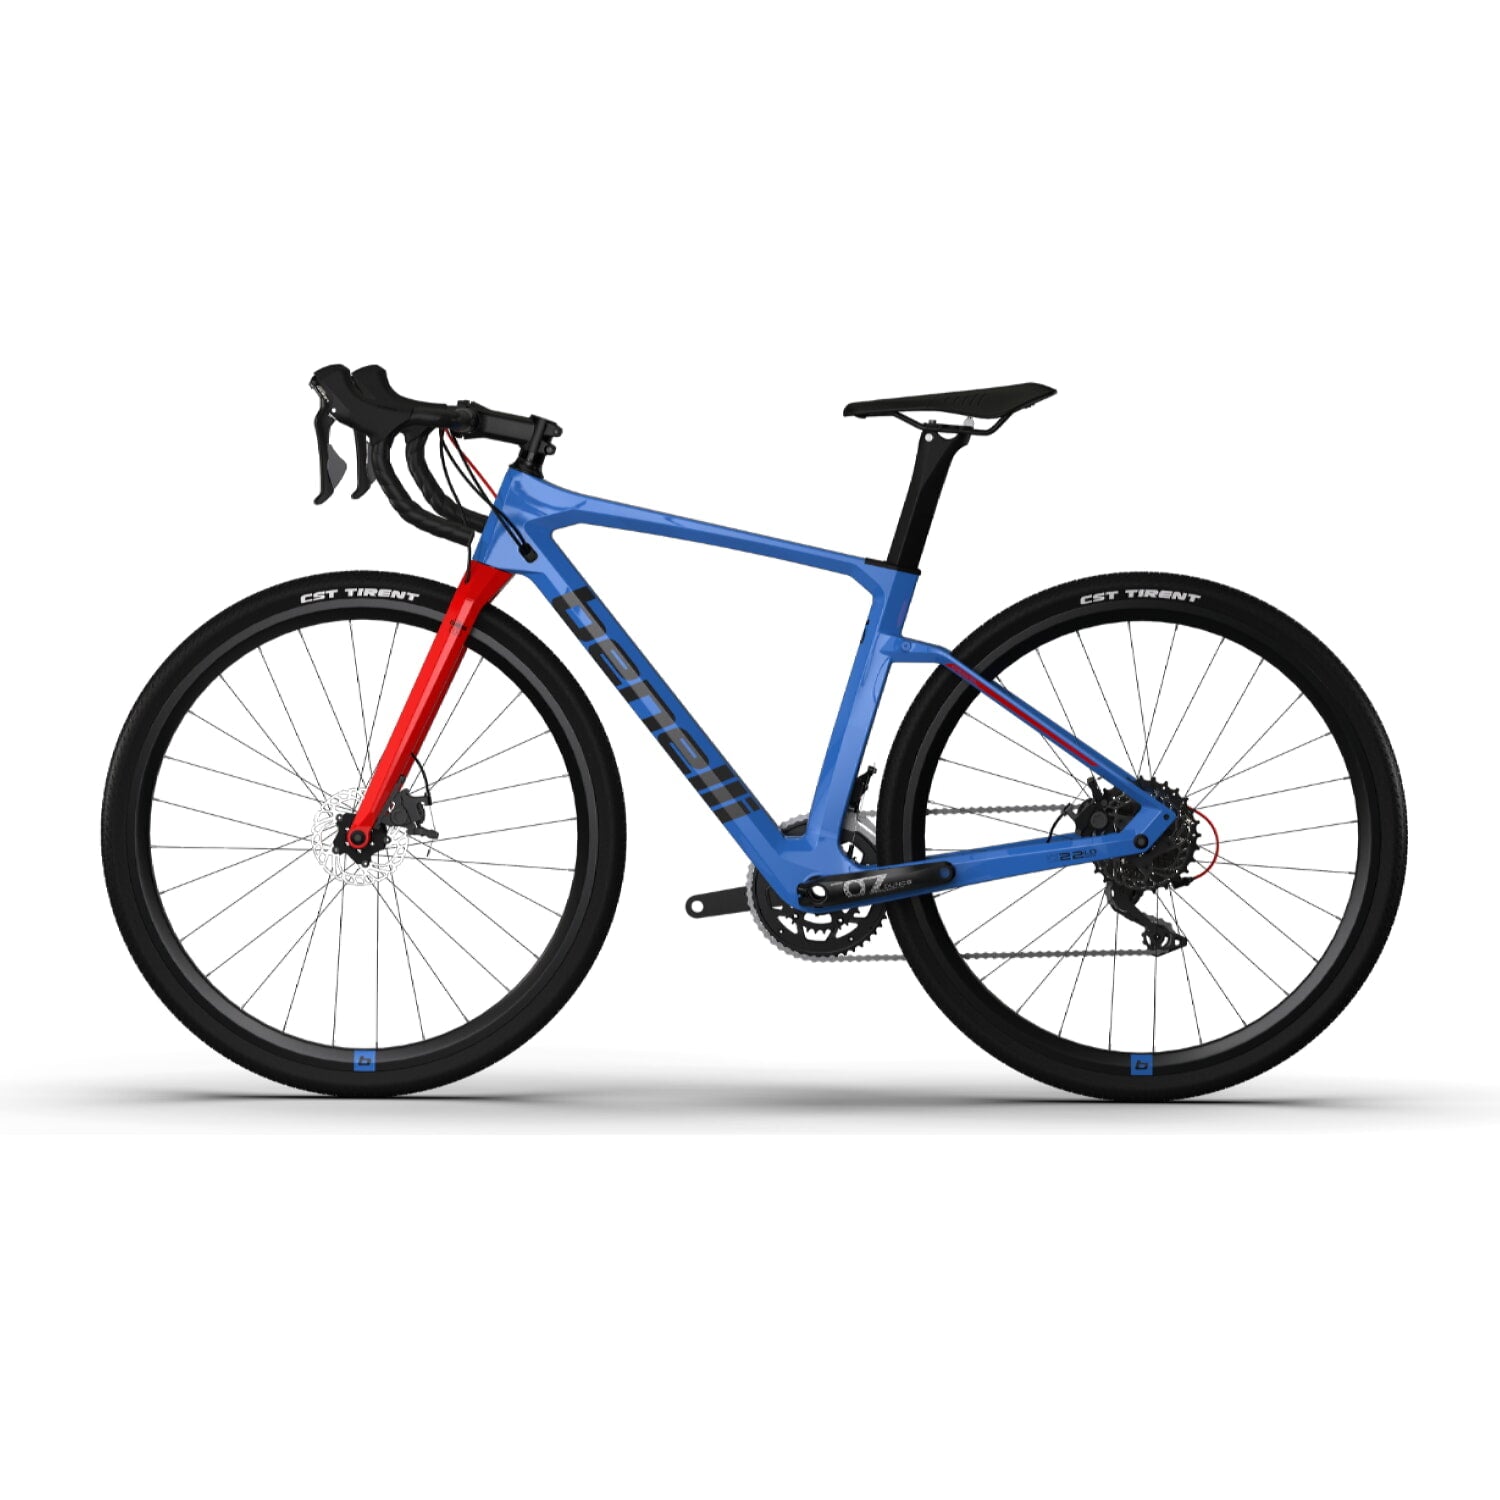 Bicicleta Gravel Benelli Carb. (G22 1.0 Adv Carb) Color Azul/Negro Talla M